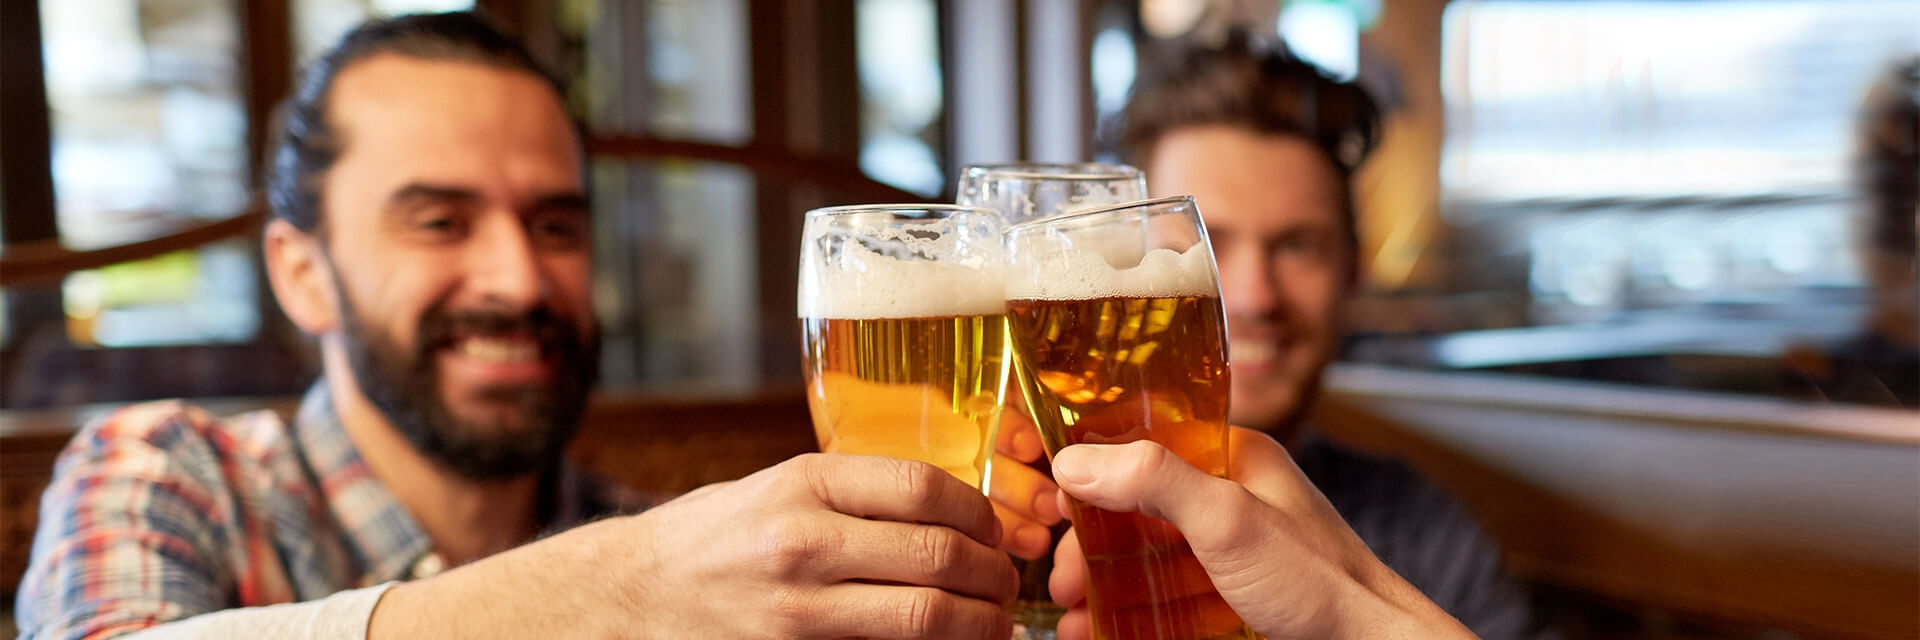 Men holding glassing toasting in restaurant